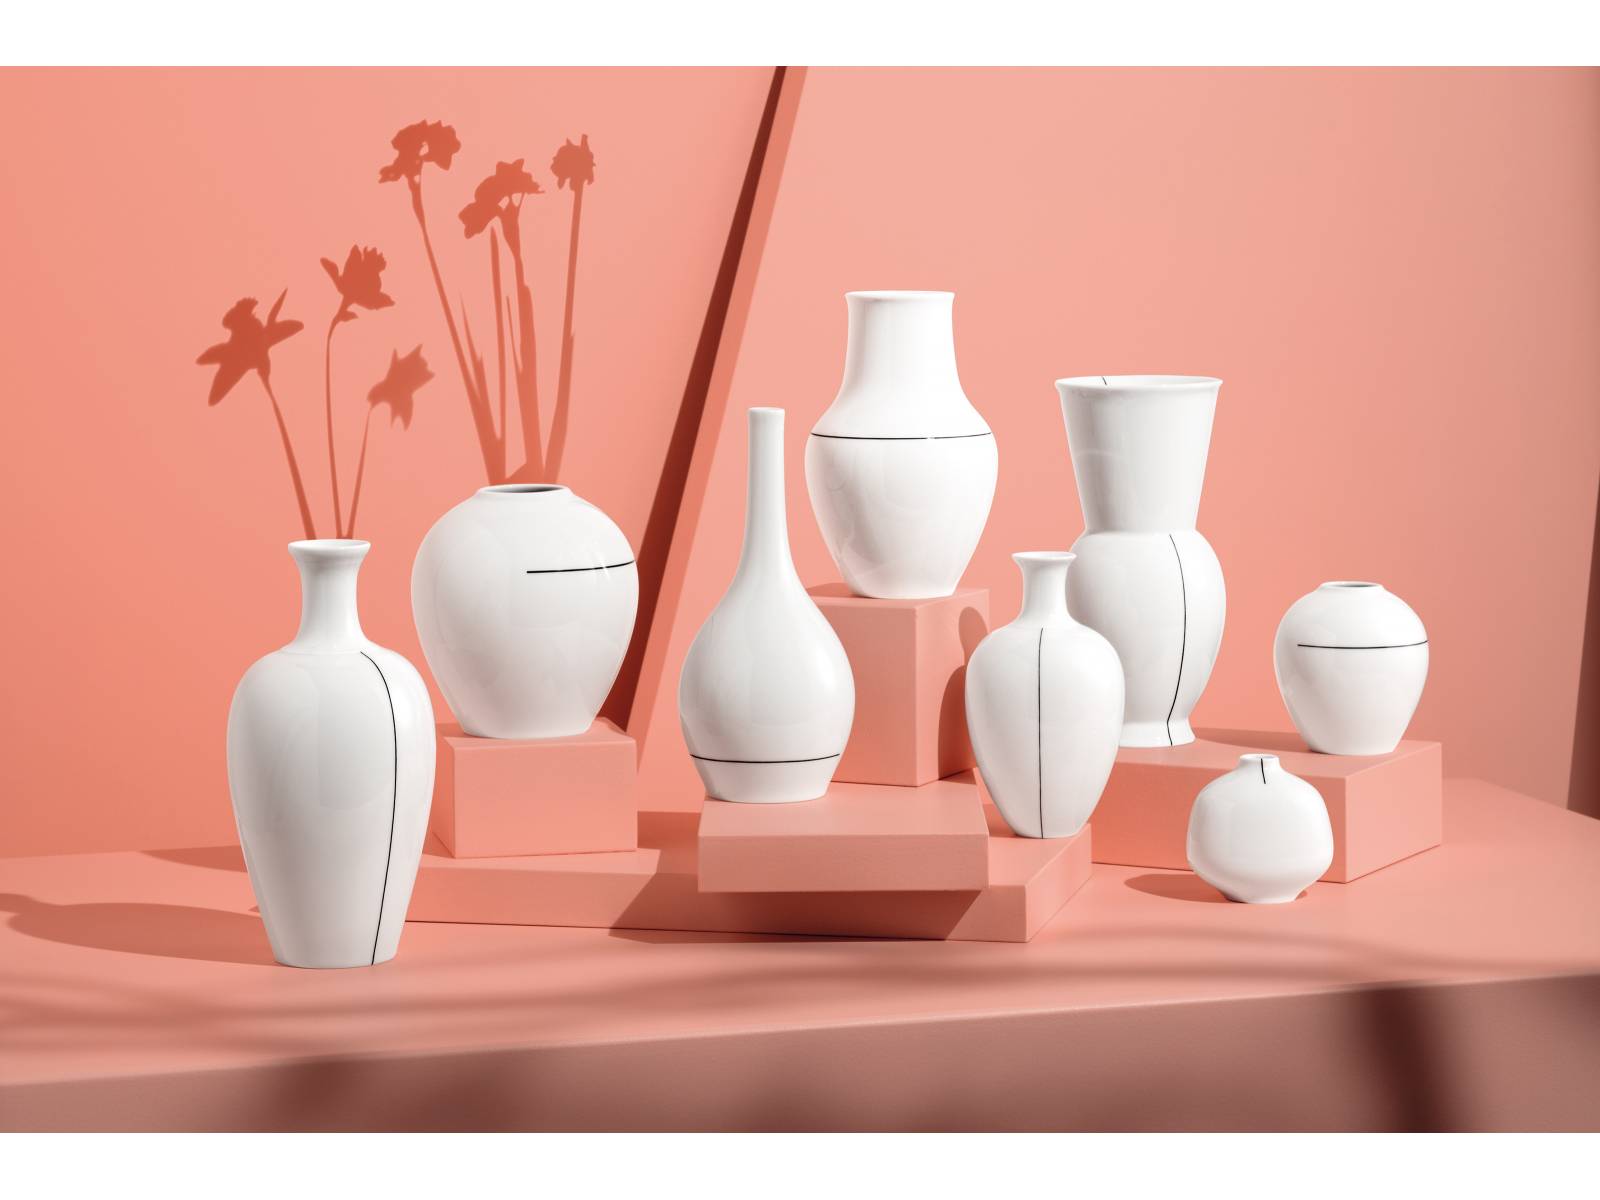 Der feine, schwarze Pinselstrich, der vertikal oder horizontal aufgebracht wird, macht aus den unterschiedlichen Vasen-Formen eine stimmige Gruppe. Minimum Edition. KPM.